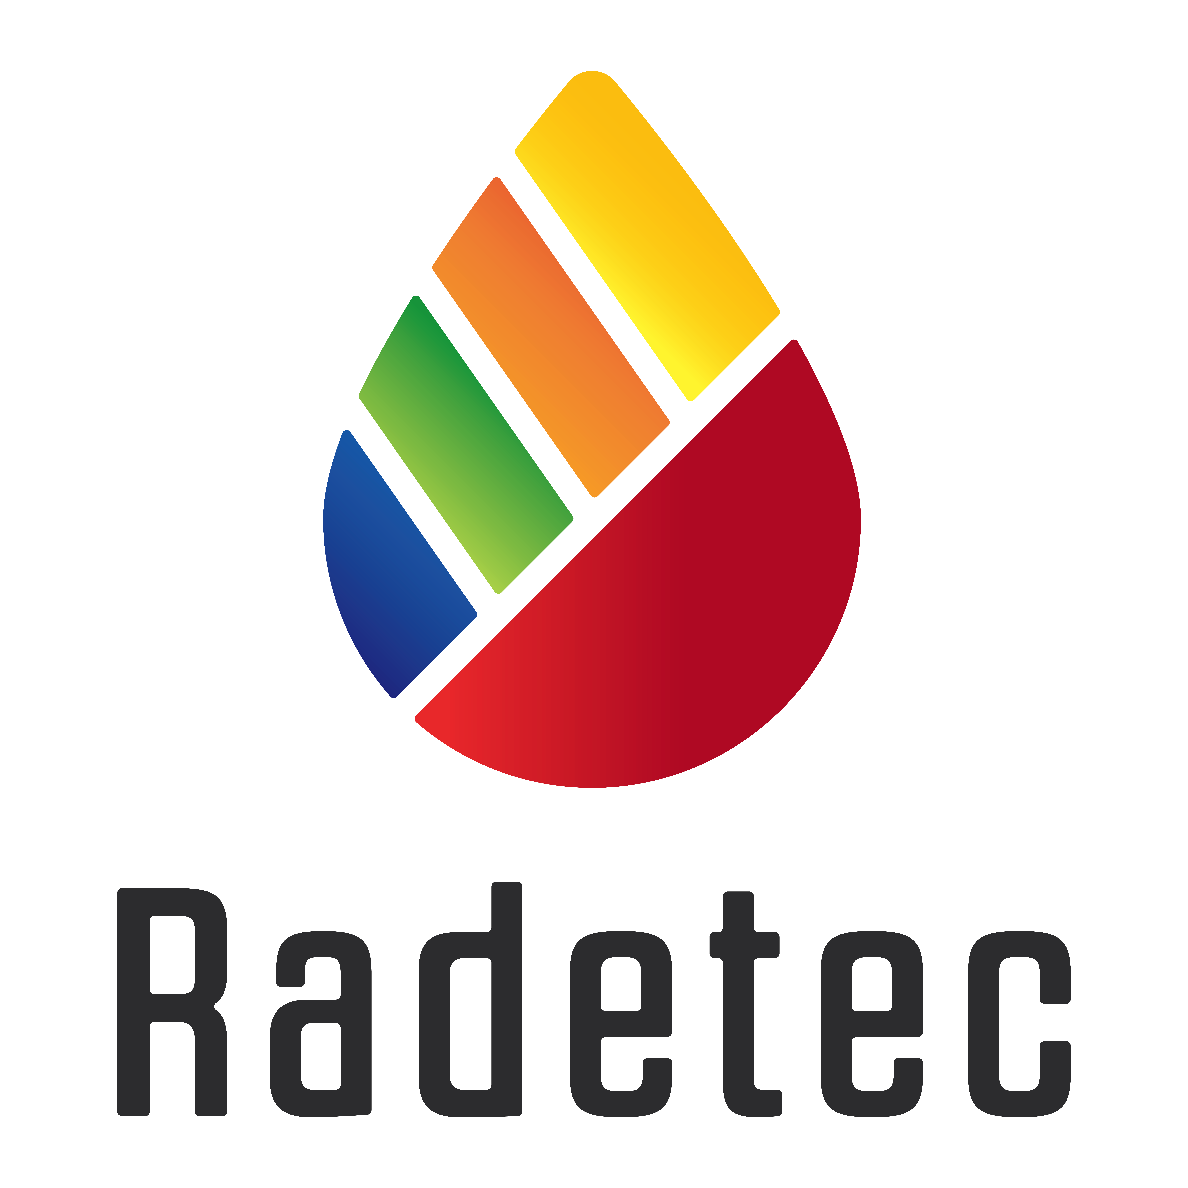 Radetec Diagnostics